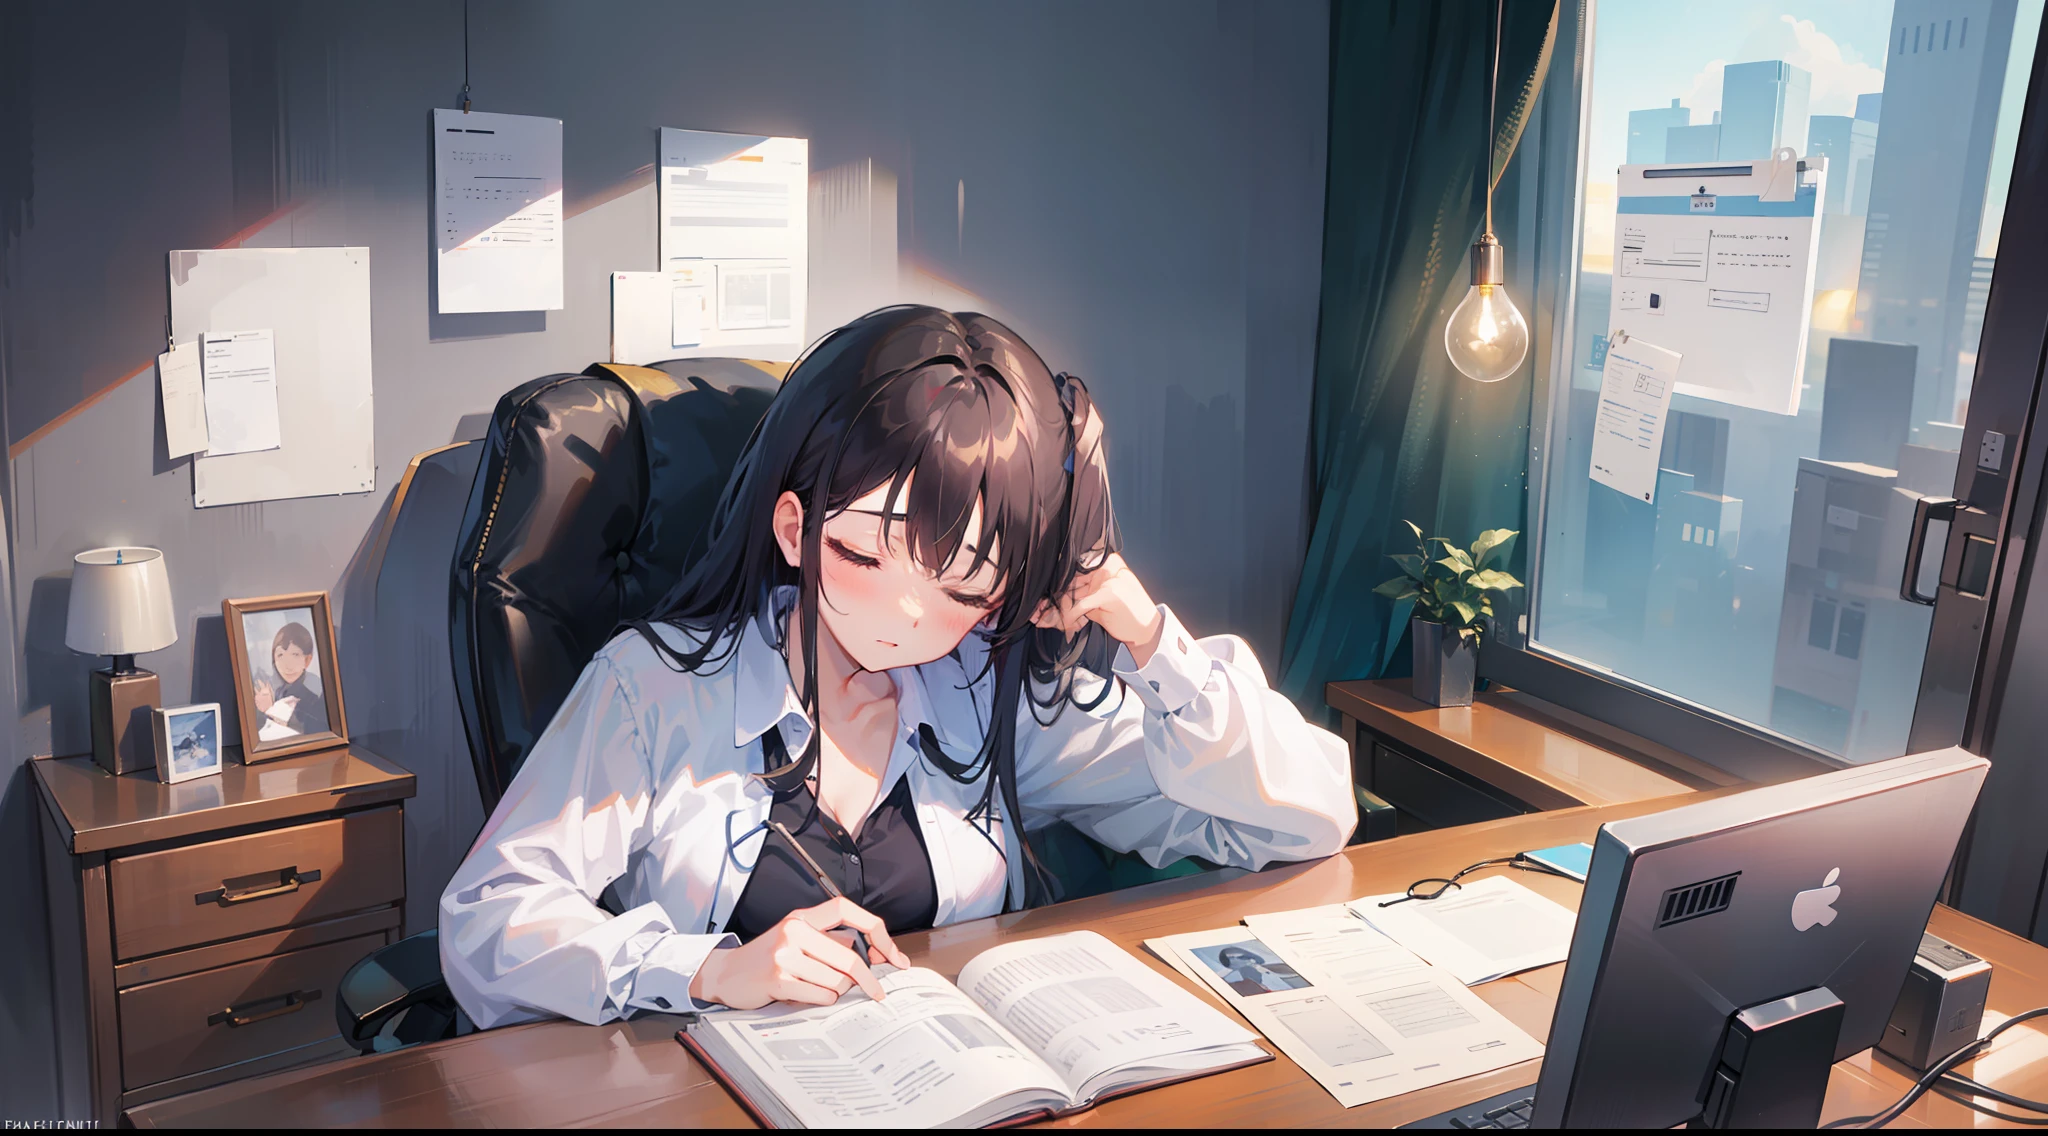 (Office Lady tomando una siesta en la oficina: 1.3)), ((acostado en el escritorio): 1.2), (pose relajada: 1.2), (Aliviado de la mirada cansada.:1.1), (Temporalmente lejos del trabajo ocupado:1.1), (Linda cara dormida:1.2), (Documentos mantenidos como almohada.:1.1), (Ambiente de oficina tranquilo:1.1), (Ventanas con luz suave:1.1), ( El monitor de la computadora deslumbra:1.0), (Compañeros de trabajo cercanos:1.2), (Postura cómoda para dormir:1.1), (Preciosos artículos de escritorio.:1.1), Estilo inspirado en Francis Perkopi "Descanso de la tarde", Colores cálidos y atmósfera serena., Imágenes de alta calidad que muestran curación y refrigerio temporal en la oficina..

Listo